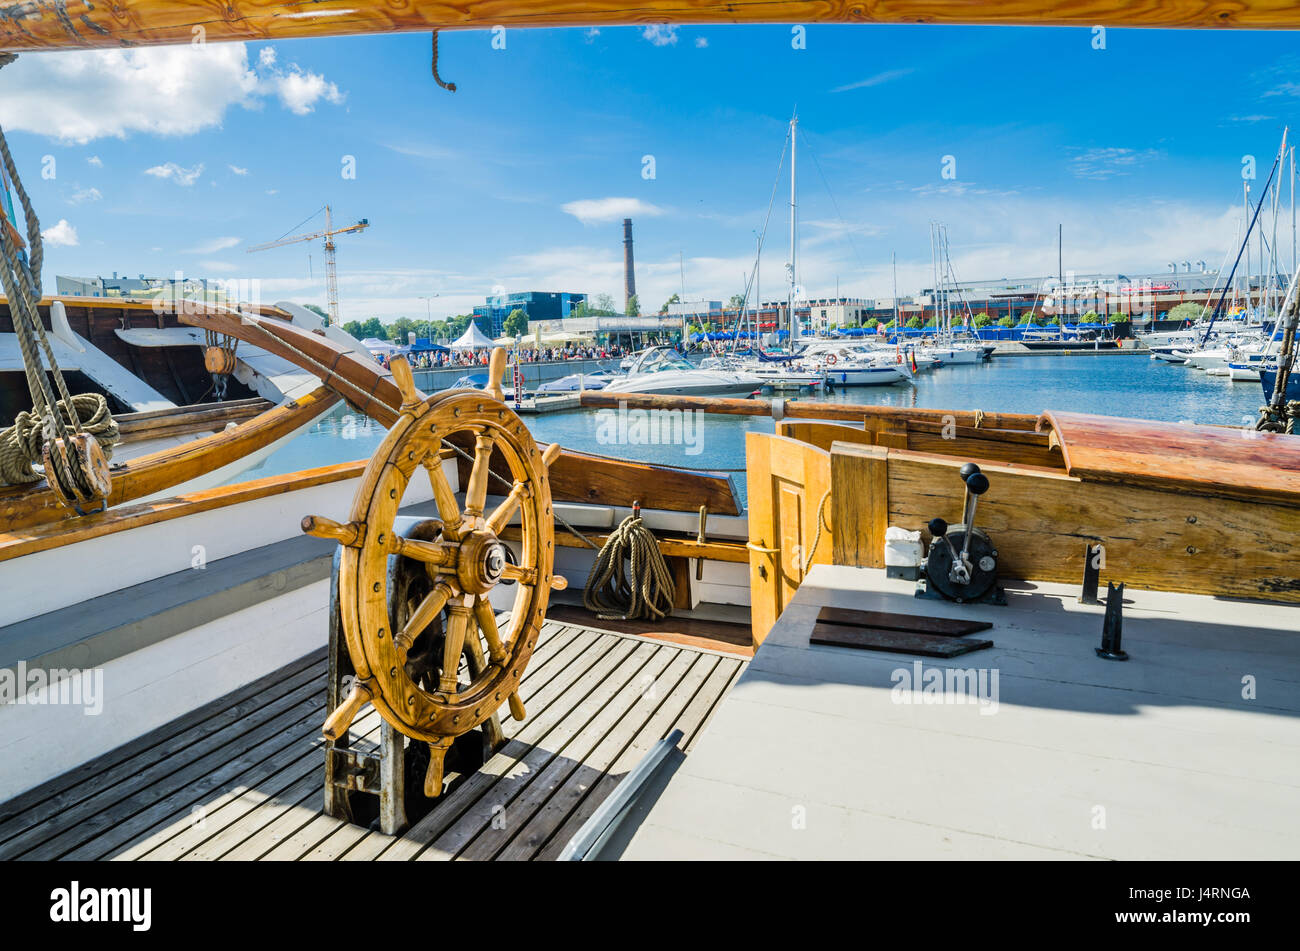 TALLINN, ESTONIE - 16 juillet : Yachts venus célébrer les Journées de la mer à Tallinn, Estonie le 16 juillet 2016. Banque D'Images